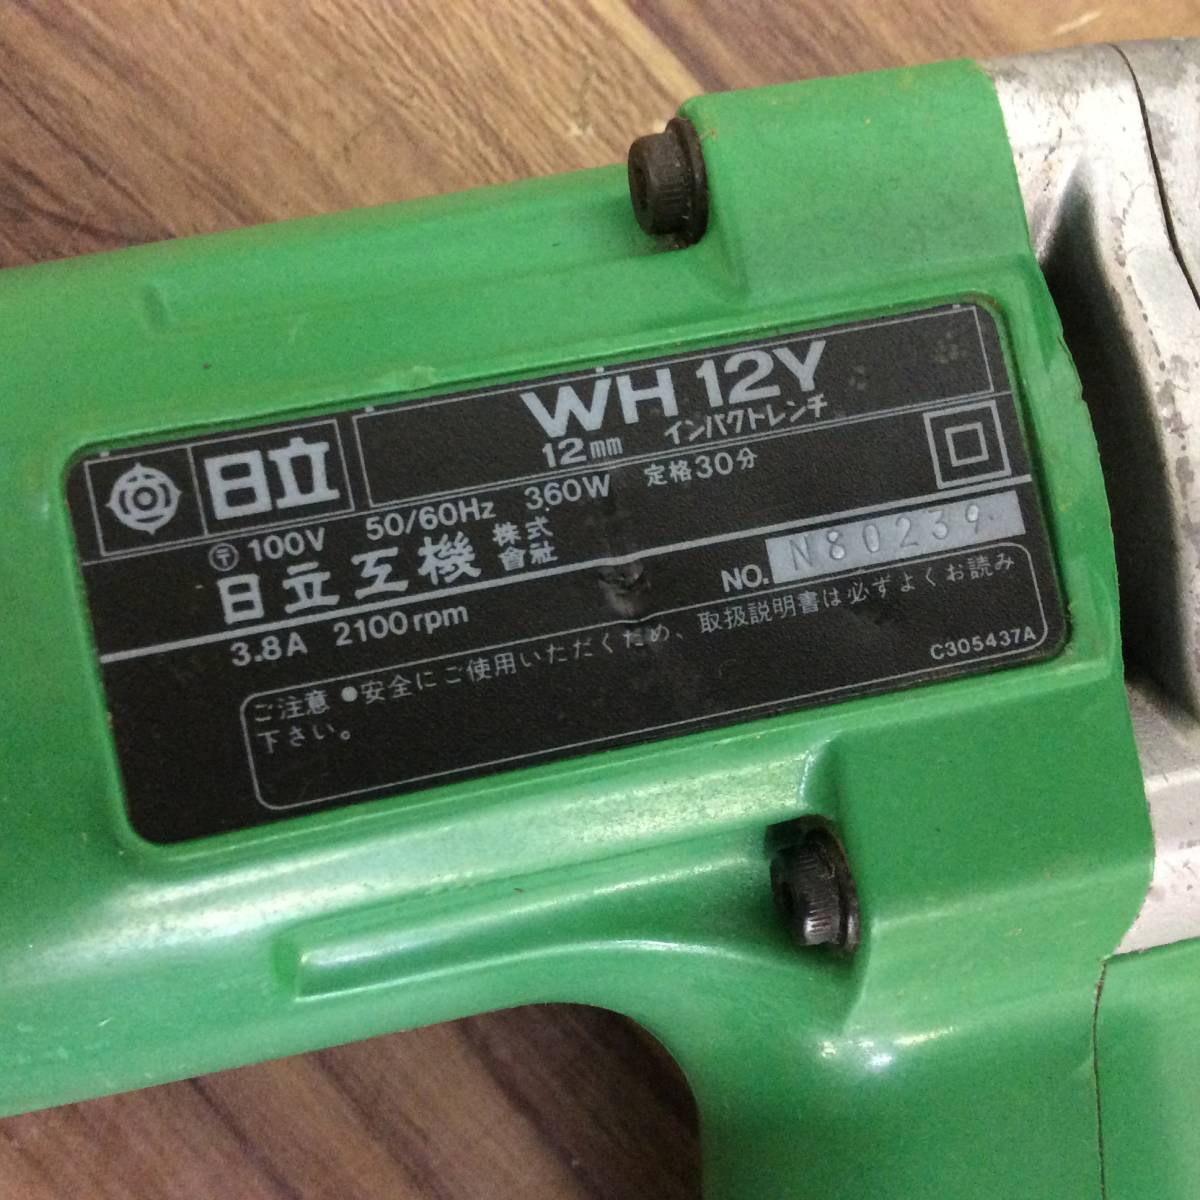 【RH-7484】中古品 HITACHI 日立工機 12mmインパクトレンチ WH12Y 100V コード式 電動工具_画像5